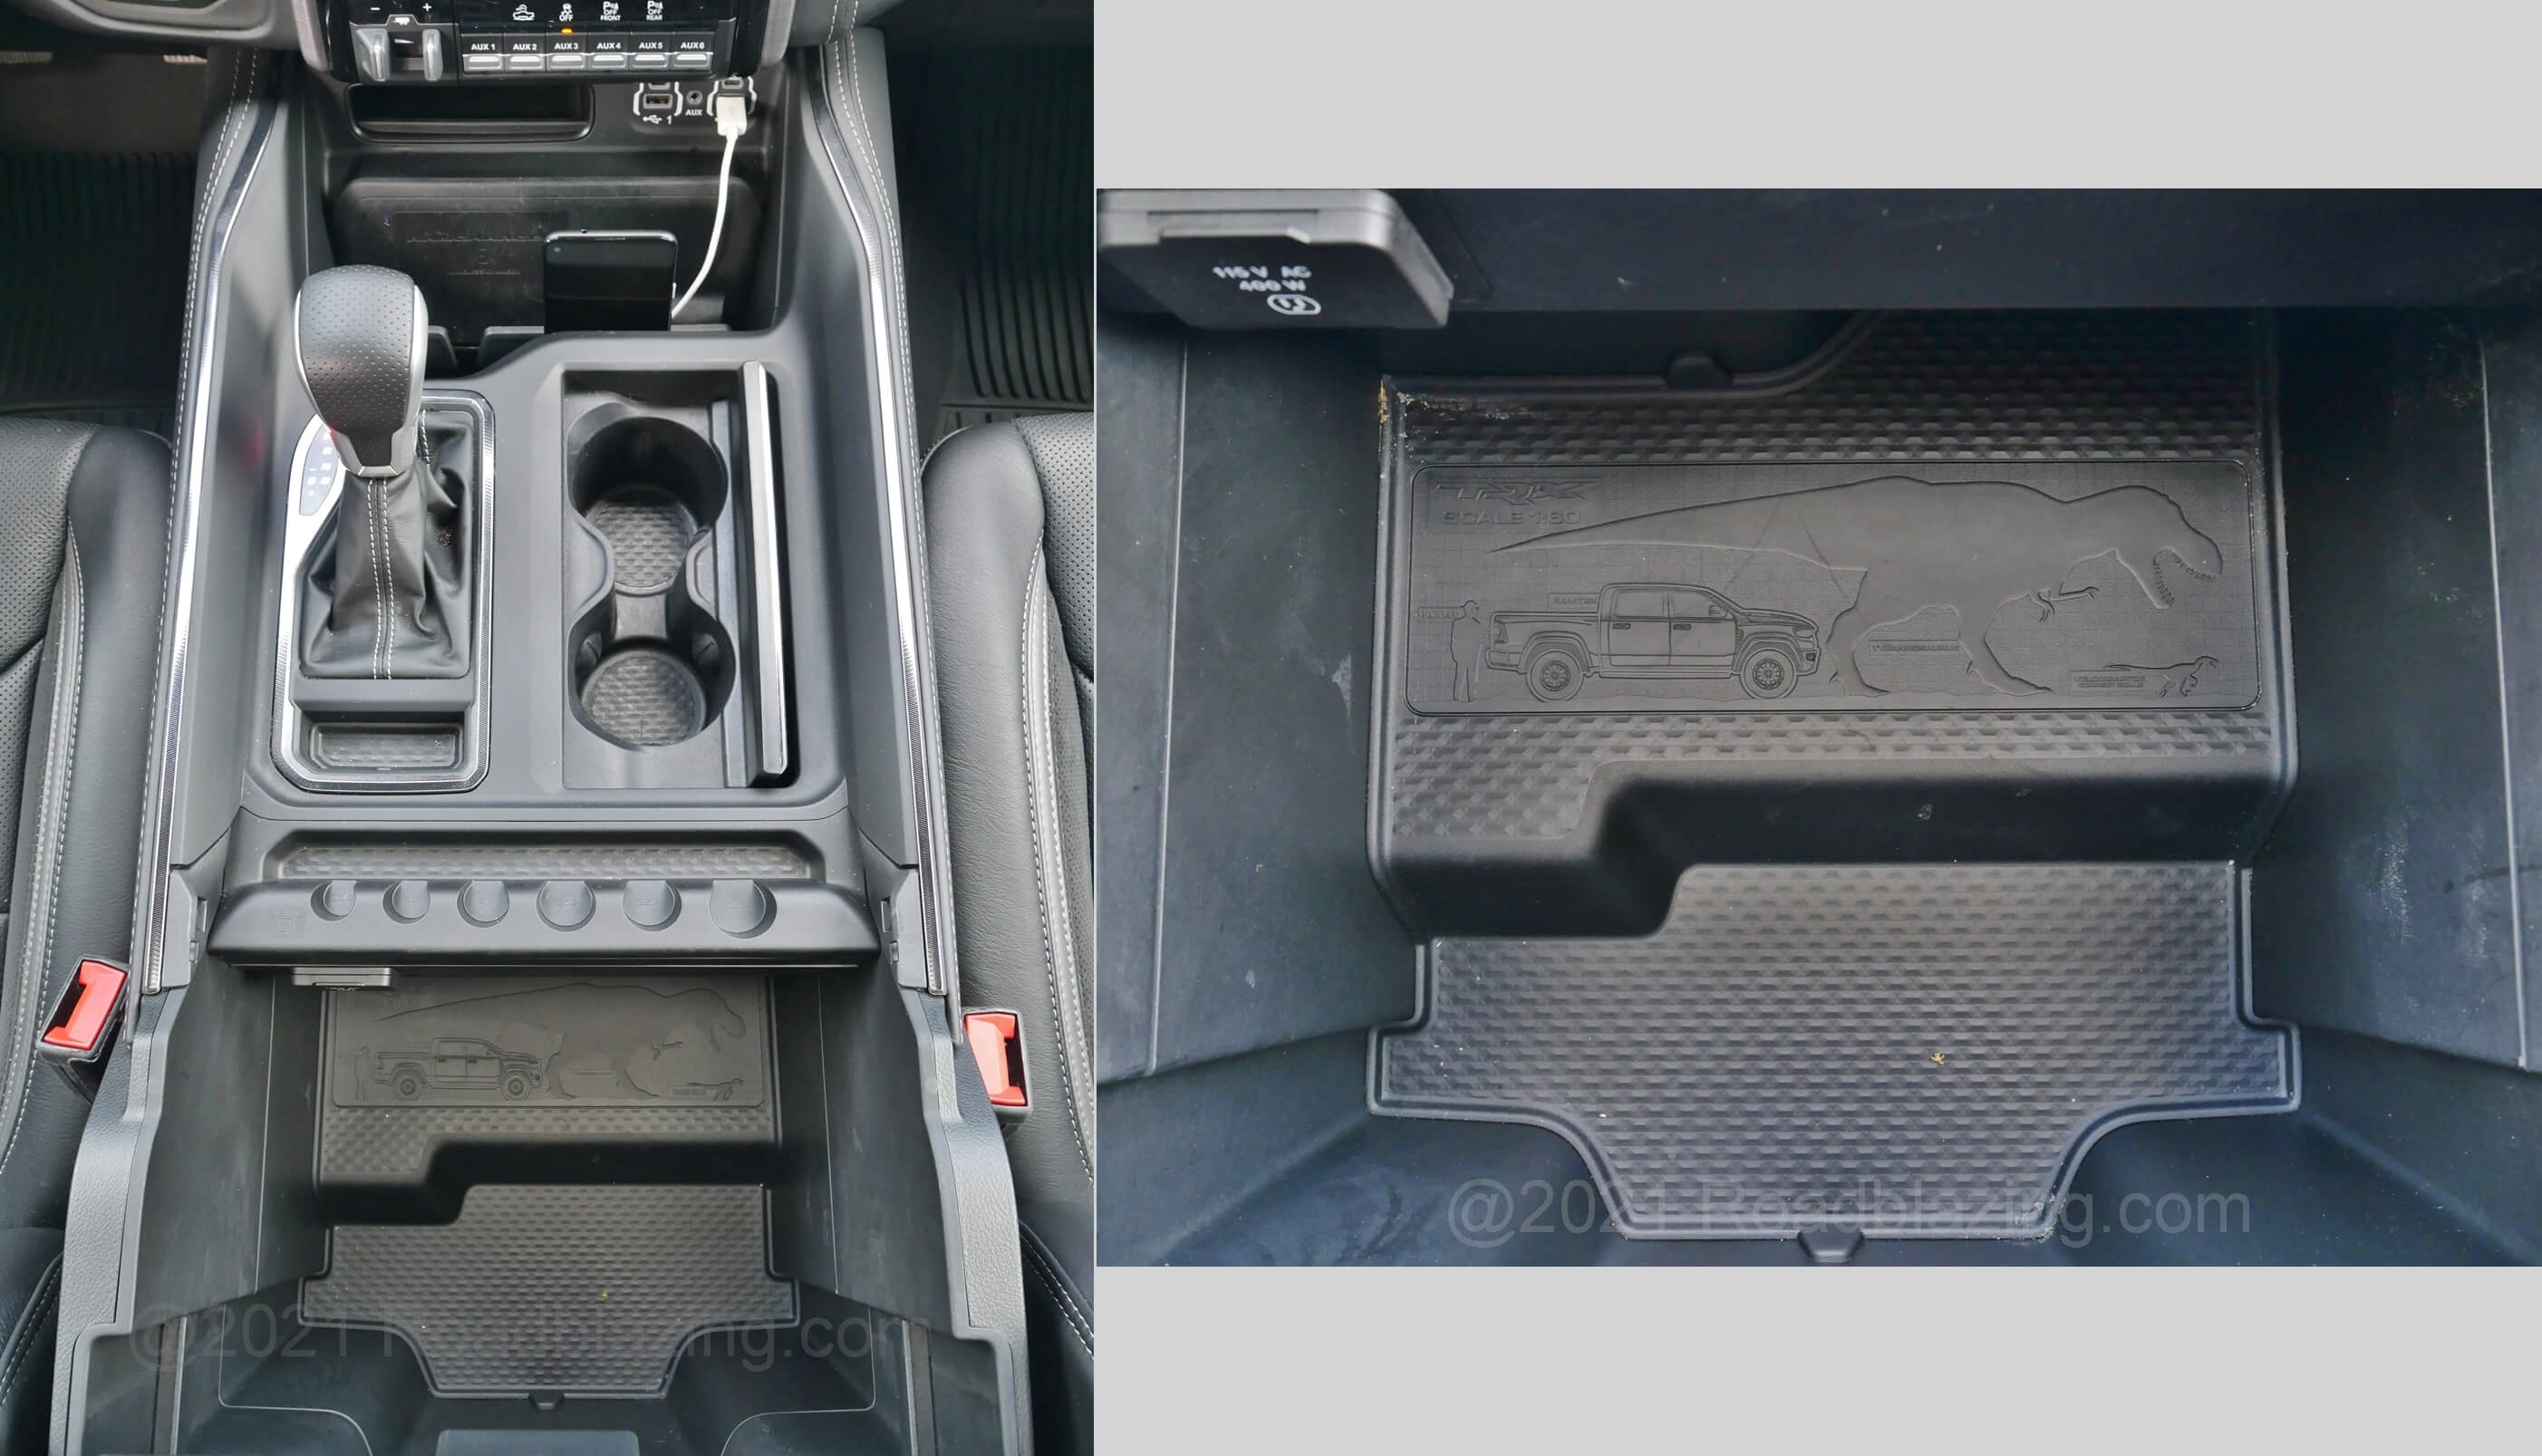 2021 RAM 1500 TRX Crew Cab 4x4: perspective of T-Rex hidden deep inside center console armrest storage bin